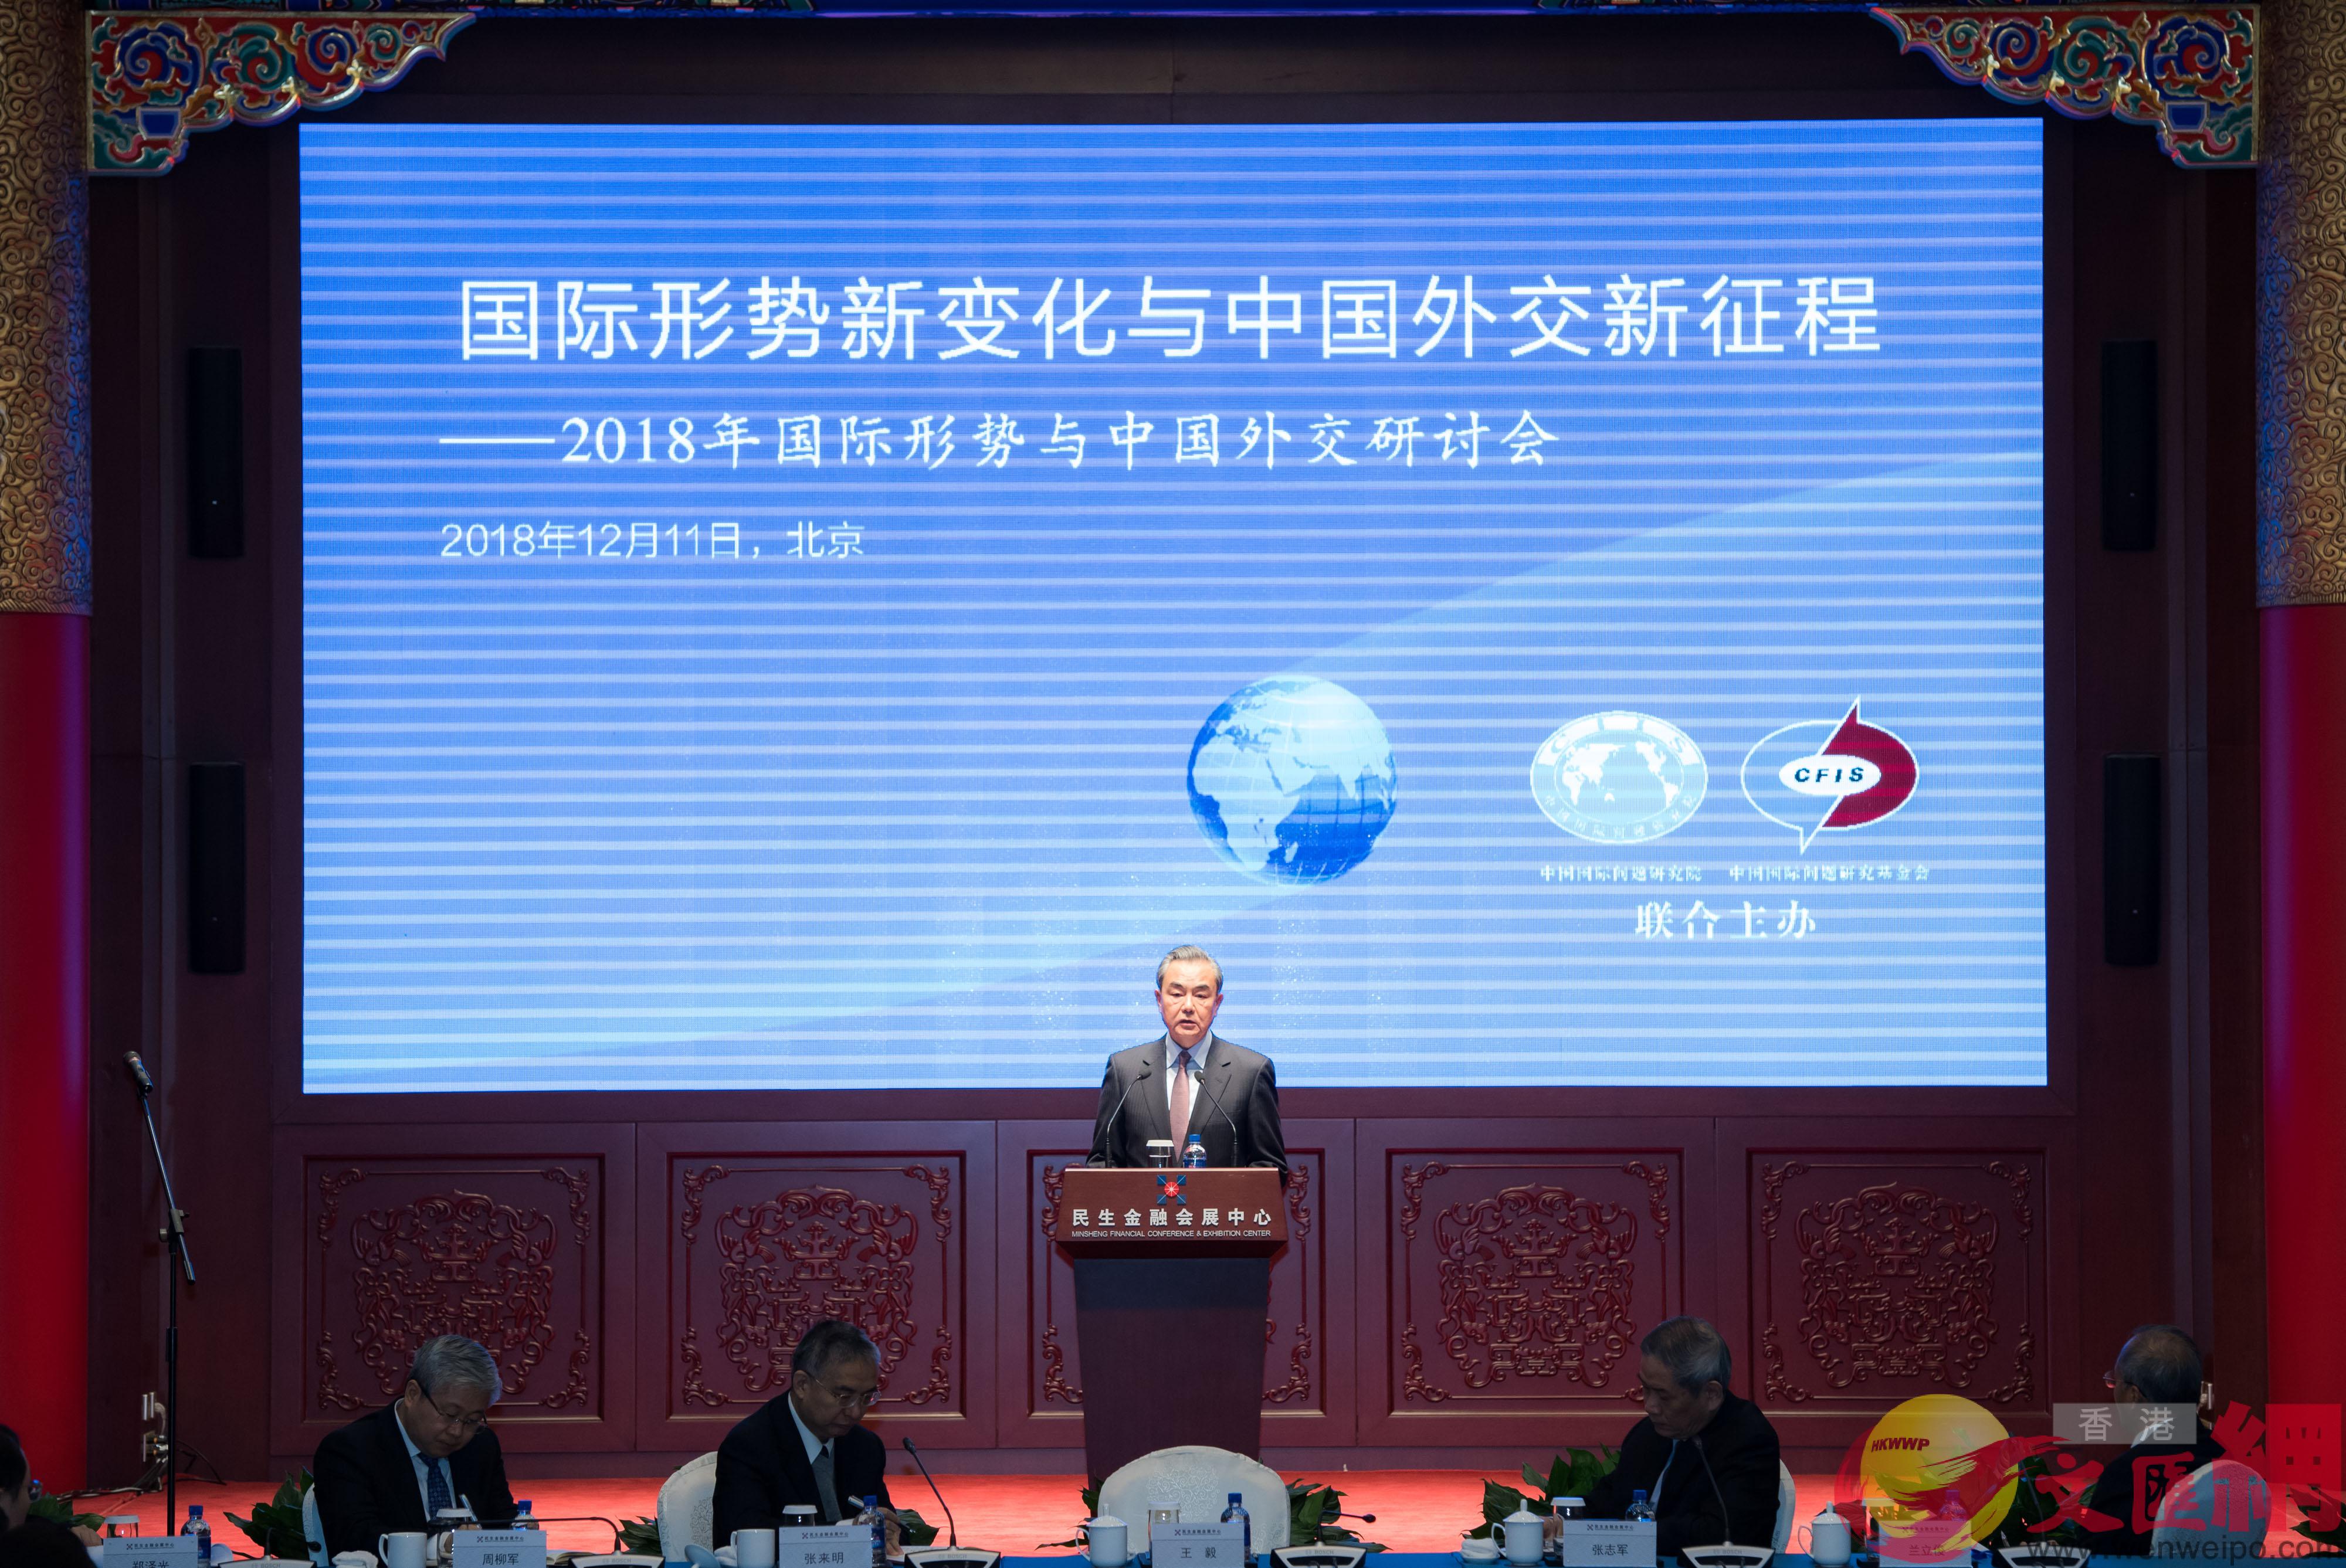 12月11日A國務委員兼外交部長王毅出席由中國國際問題研究院B中國國際問題研究基金會在北京舉辦的2018年國際形勢與中國外交研討會開幕式併發表演講C 新華社